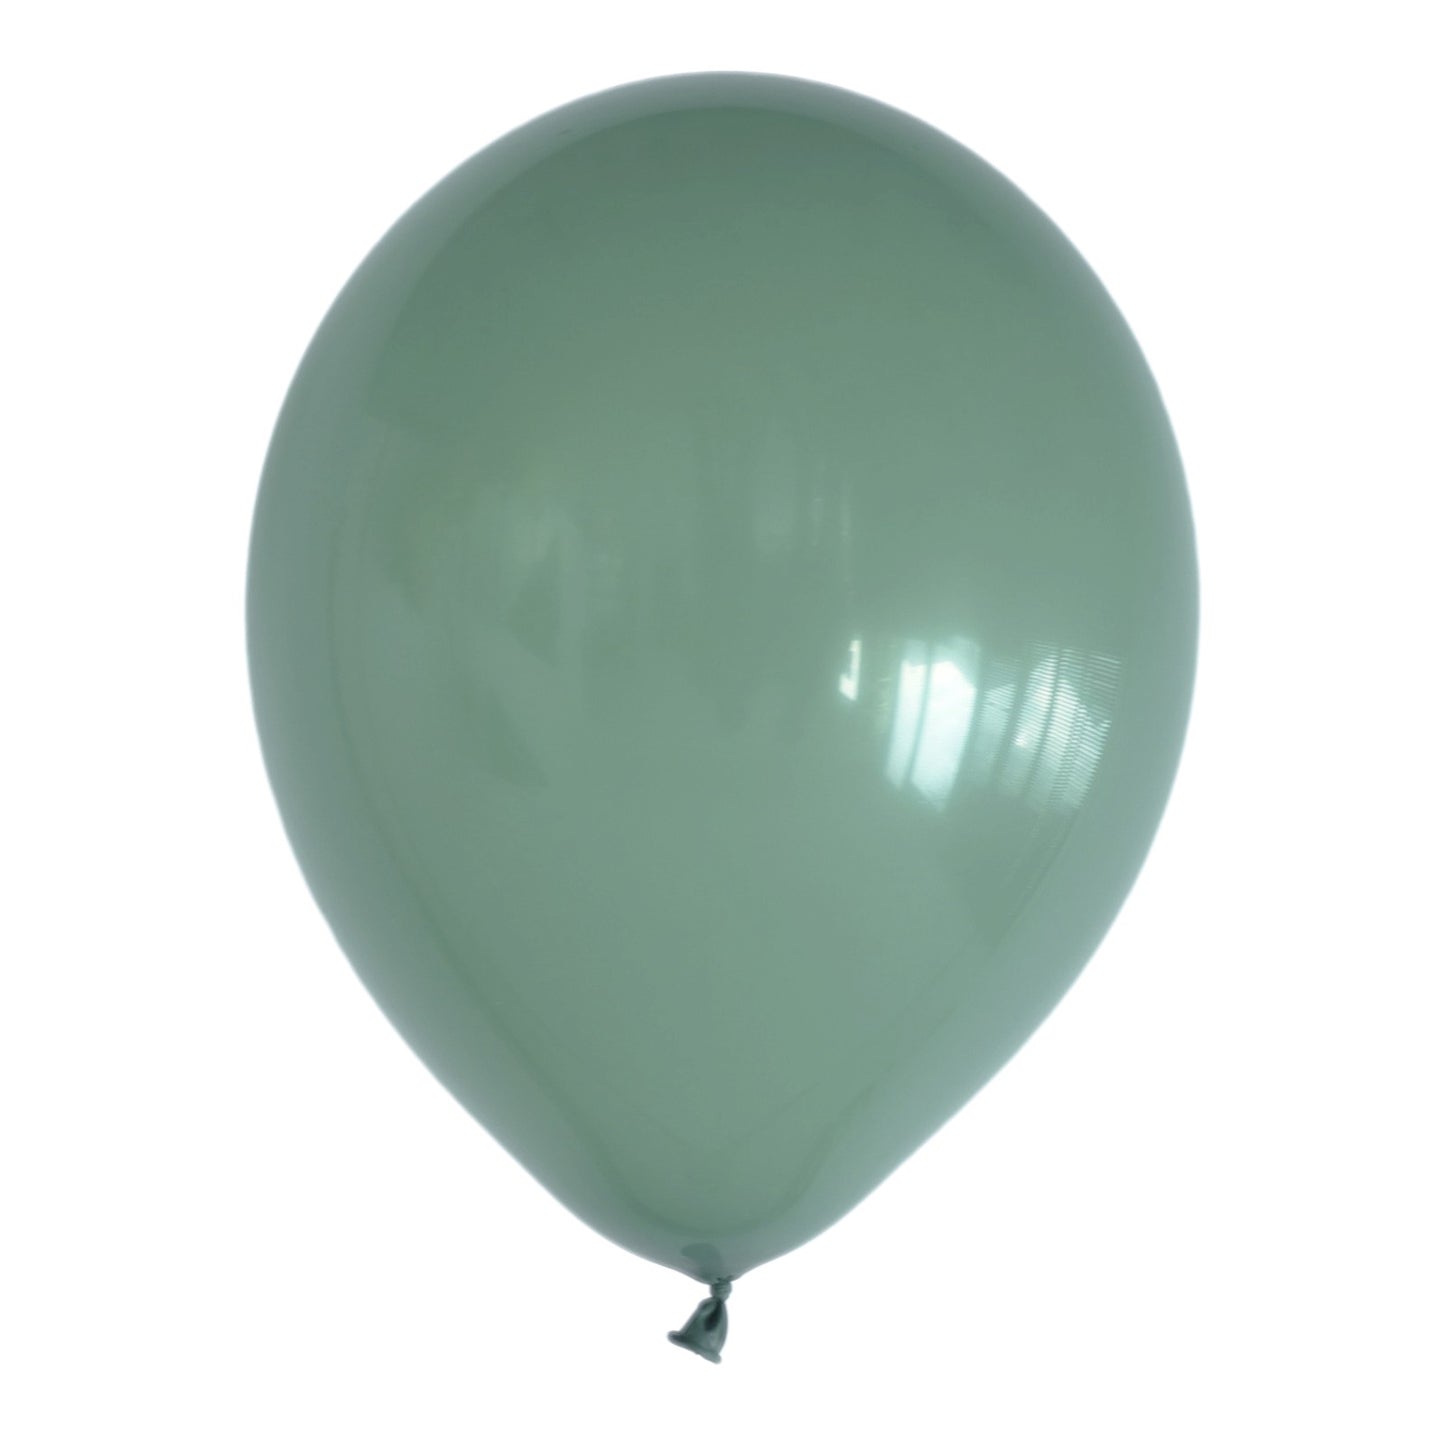 Avocado Green Balloons (10 pcs / 30 CM)